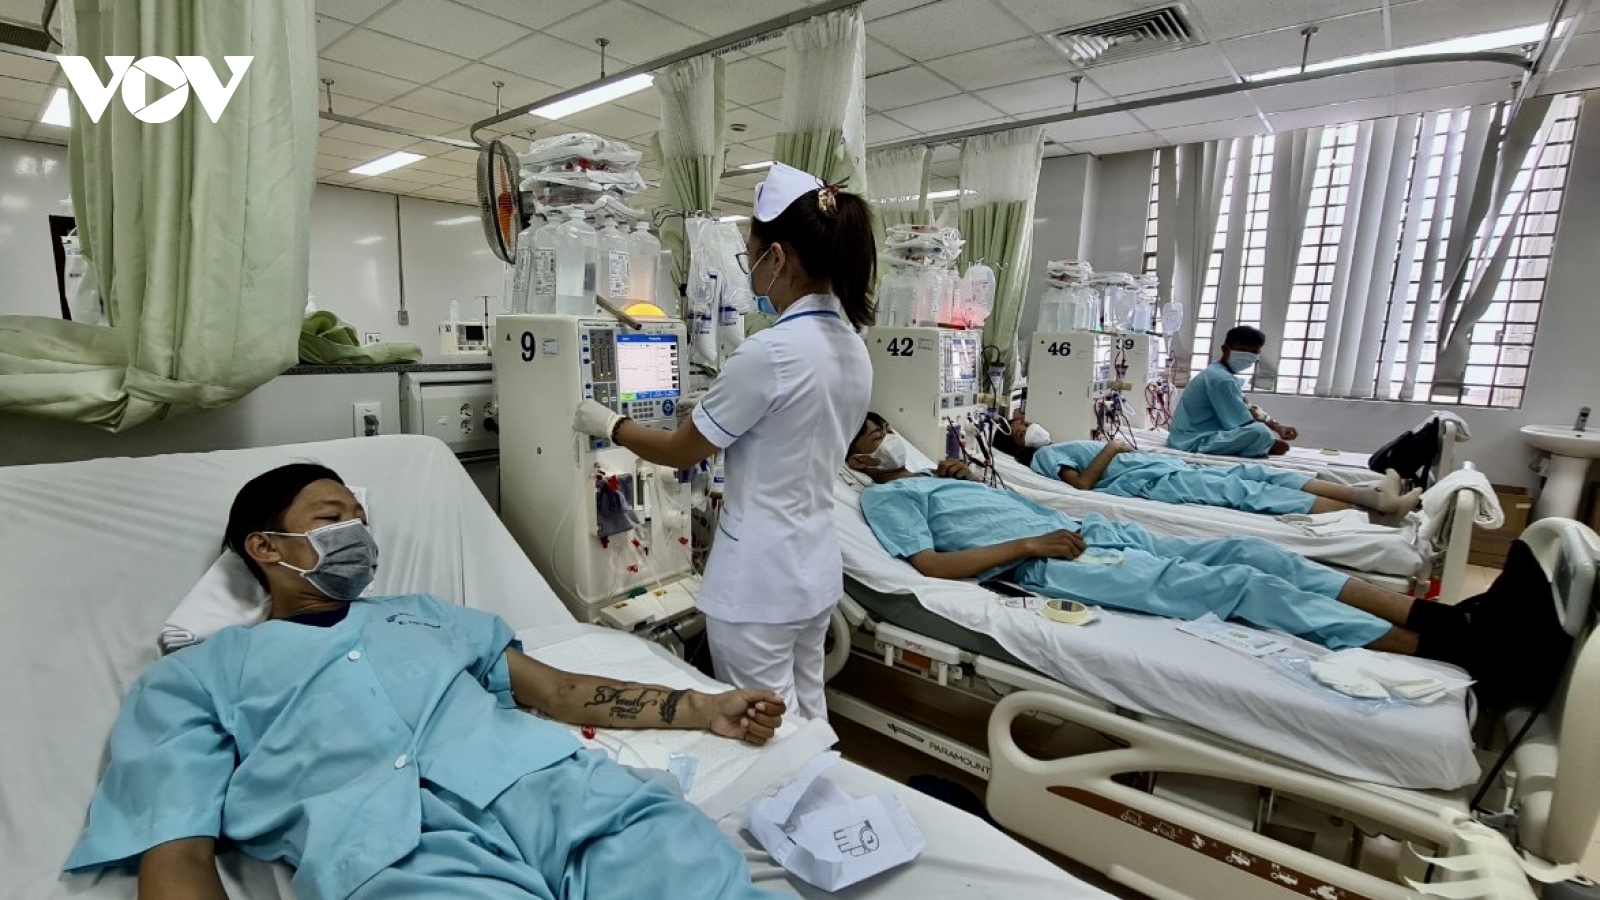 Máy lọc máu tiếp tục hỏng, bệnh nhân ở Bà Rịa – Vũng Tàu lo lắng